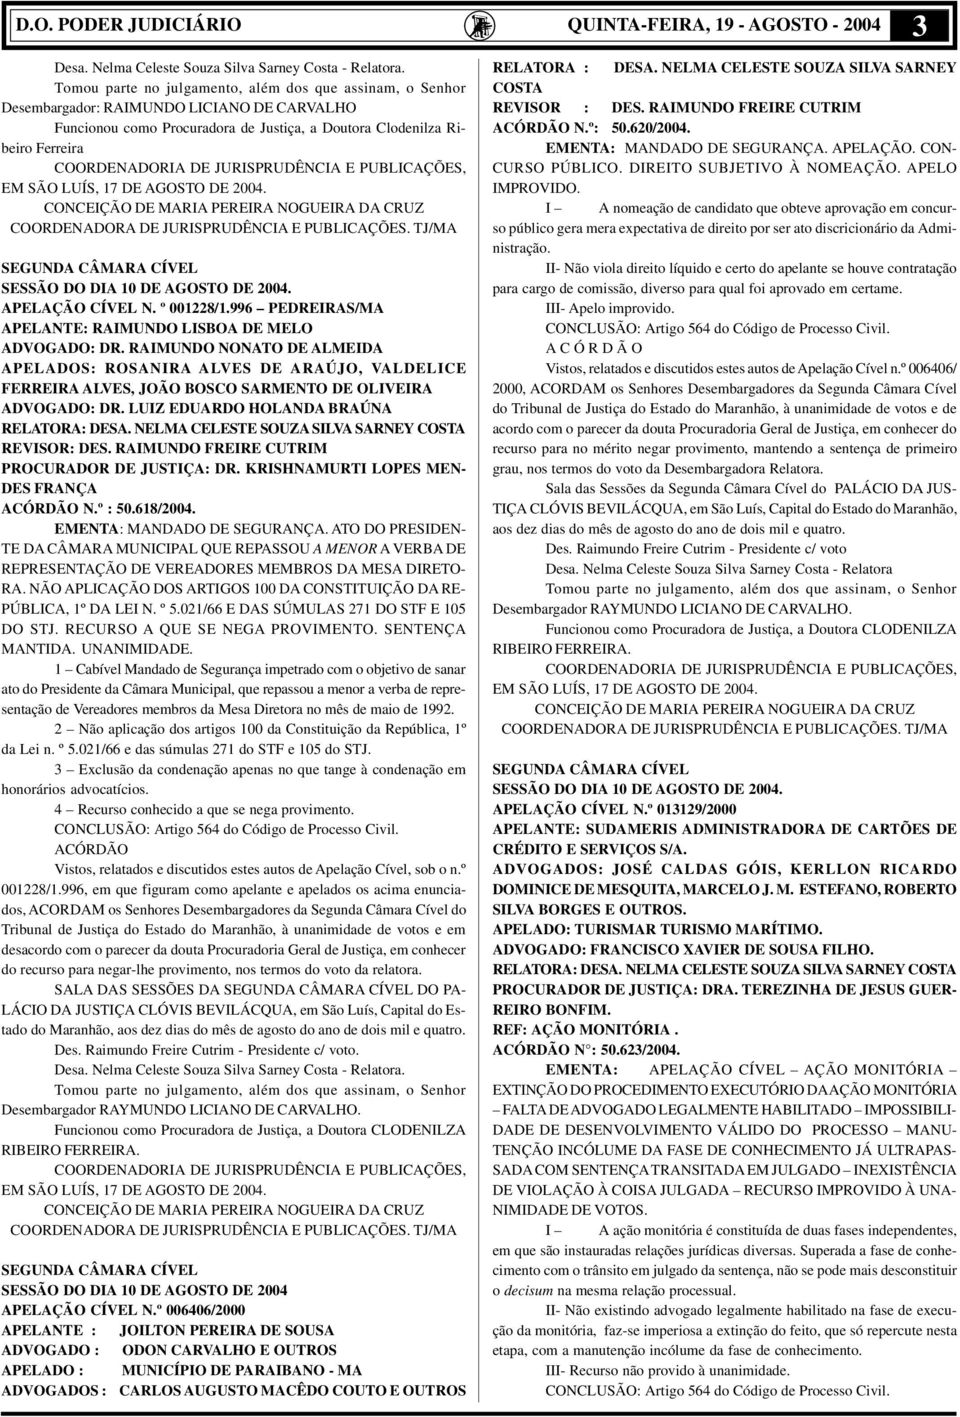 JURISPRUDÊNCIA E PUBLICAÇÕES, EM SÃO LUÍS, 17 DE AGOSTO DE 2004. CONCEIÇÃO DE MARIA PEREIRA NOGUEIRA DA CRUZ COORDENADORA DE JURISPRUDÊNCIA E PUBLICAÇÕES.